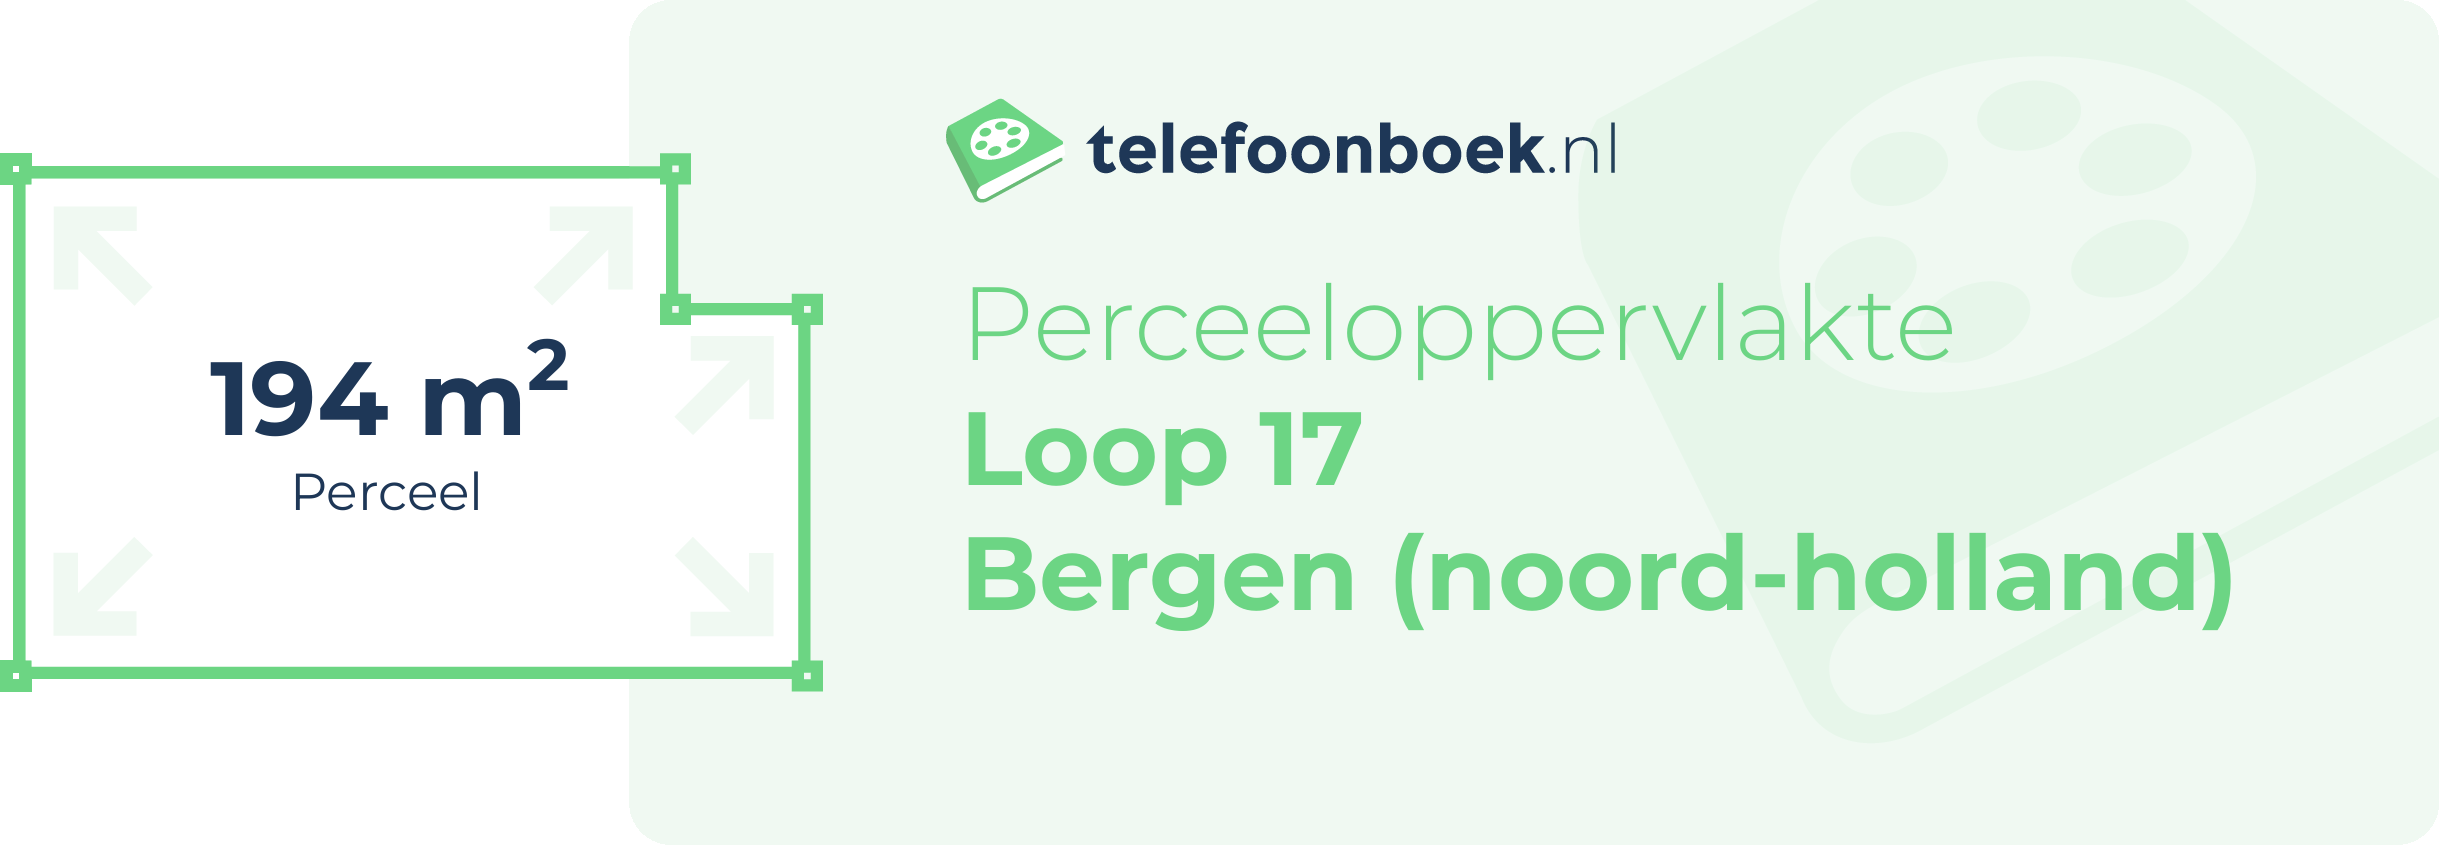 Perceeloppervlakte Loop 17 Bergen (Noord-Holland)